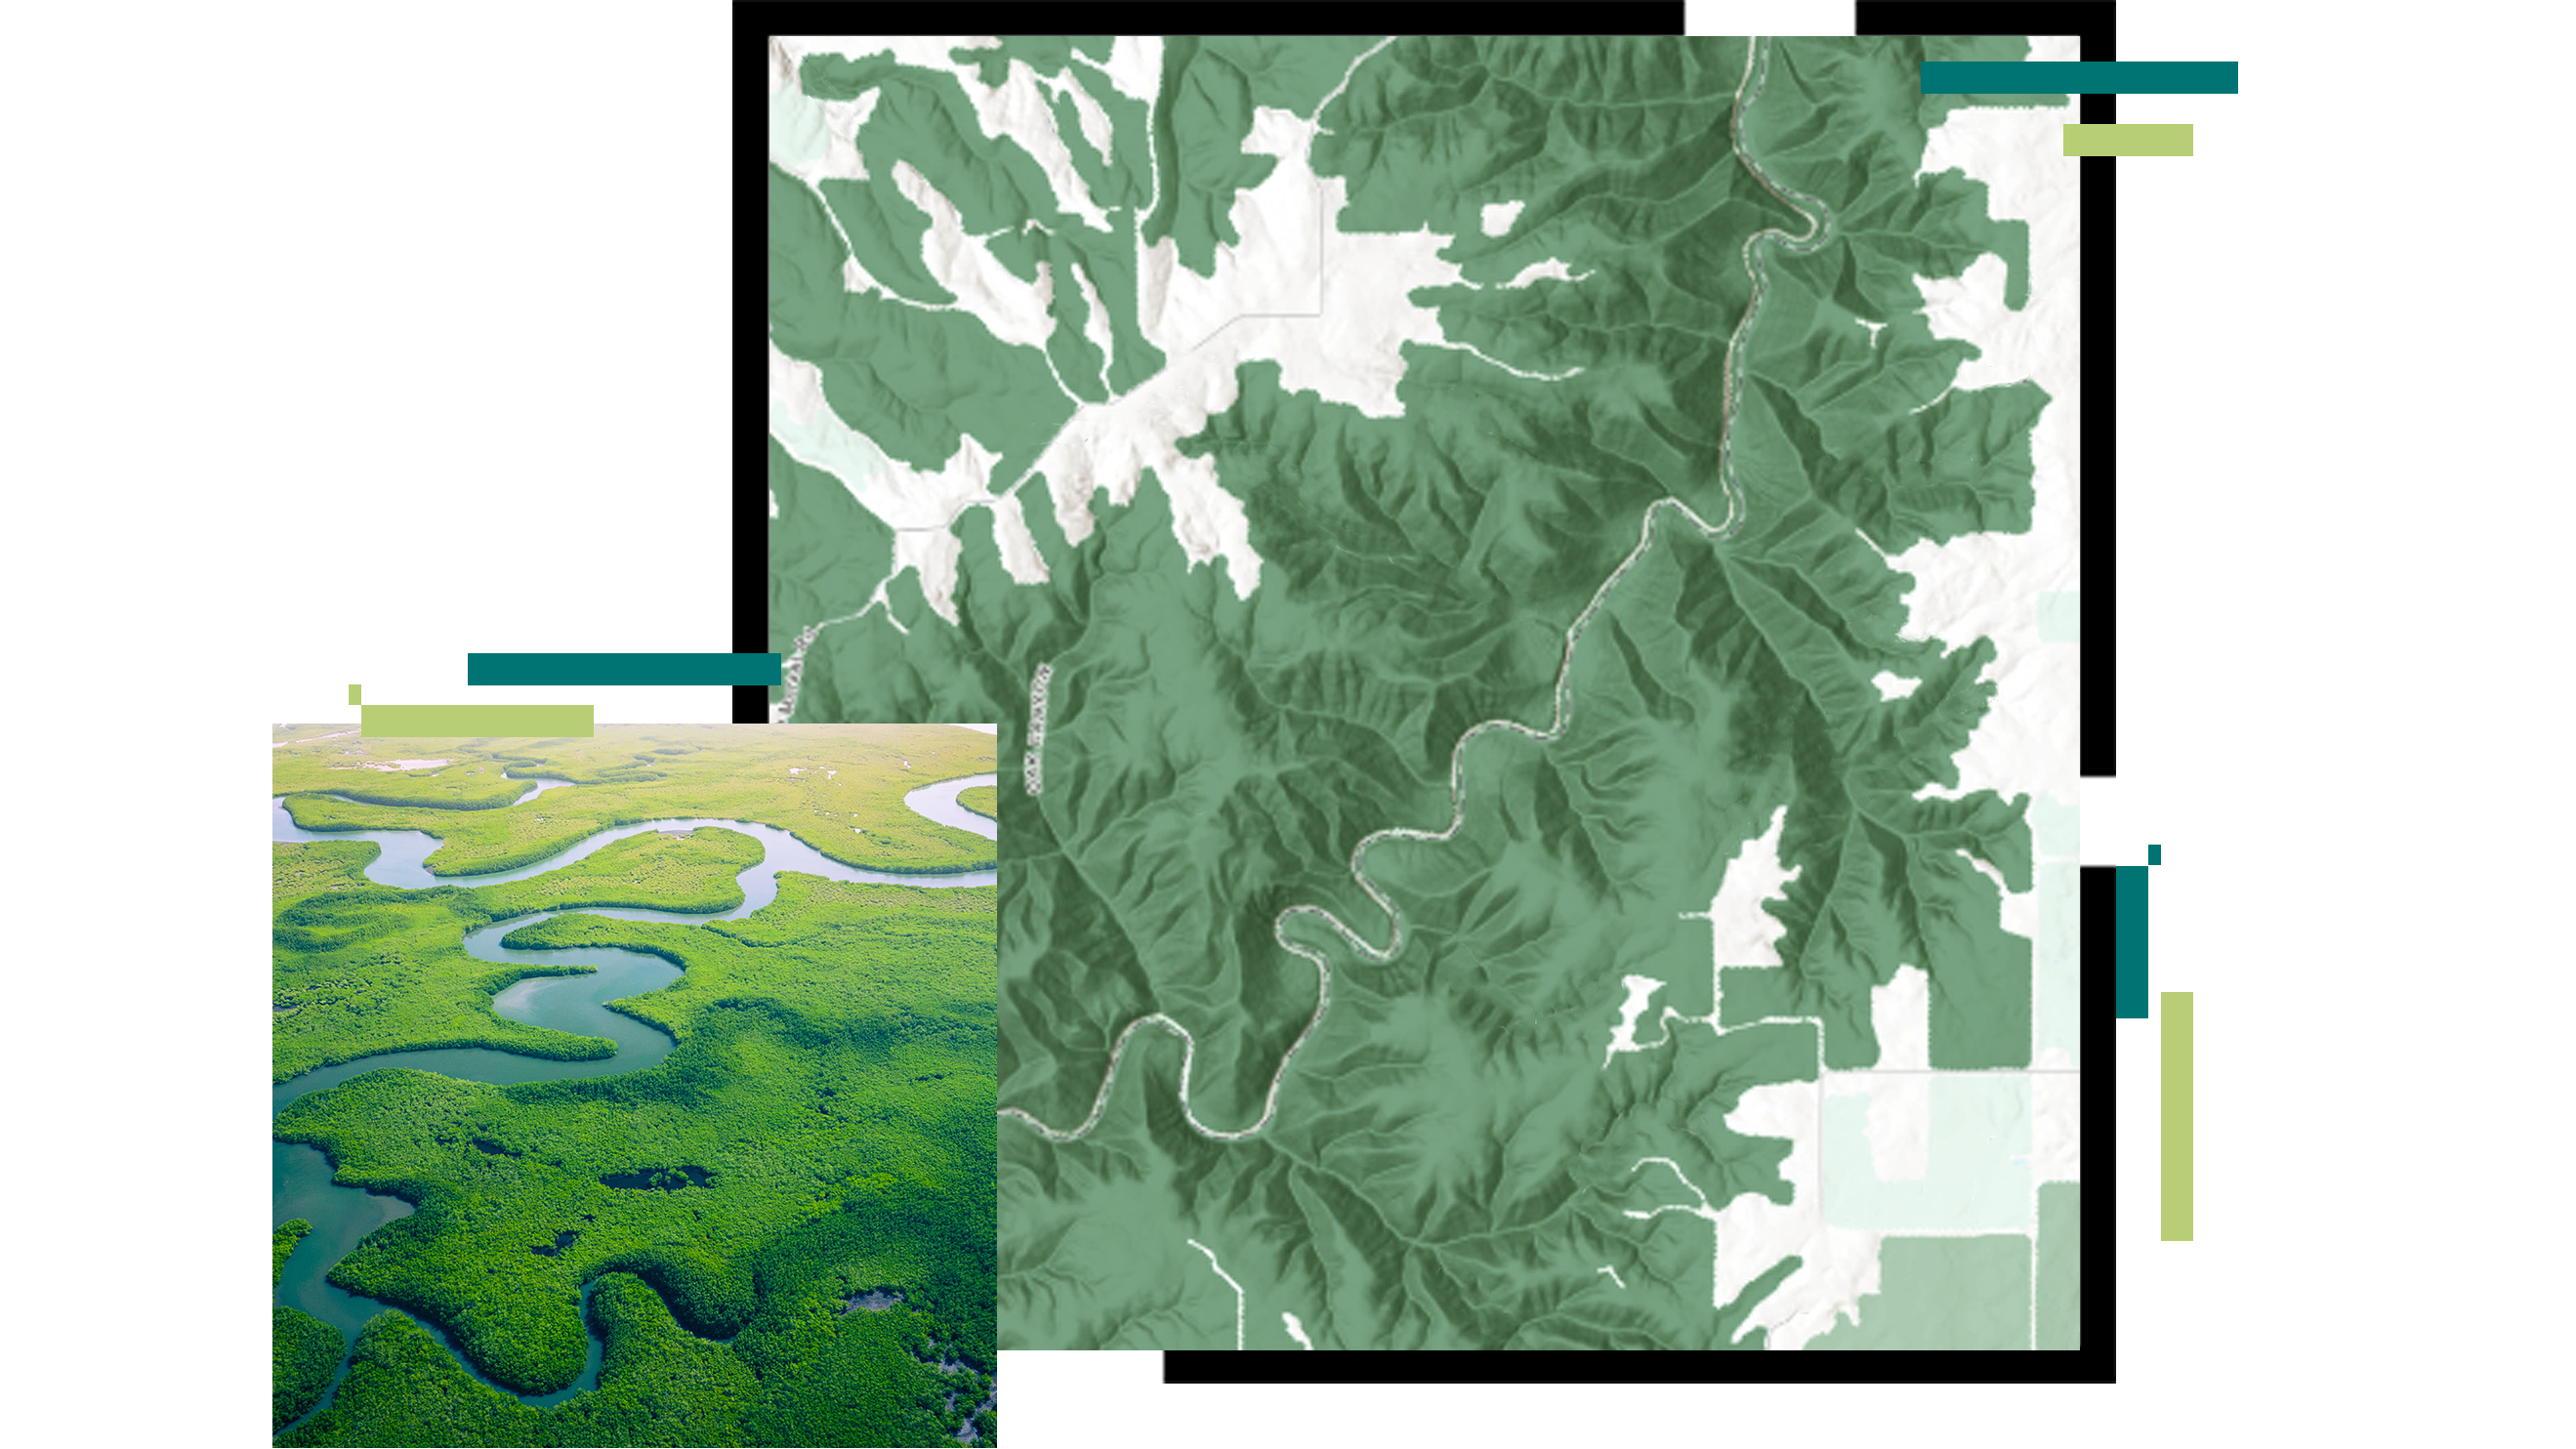 Reliefkarte eines sich durch die Landschaft schlängelnden Flusses, überlagert von einer Luftaufnahme eines grünen Mangrovenwaldes, durch den ein blauer Fluss fließt